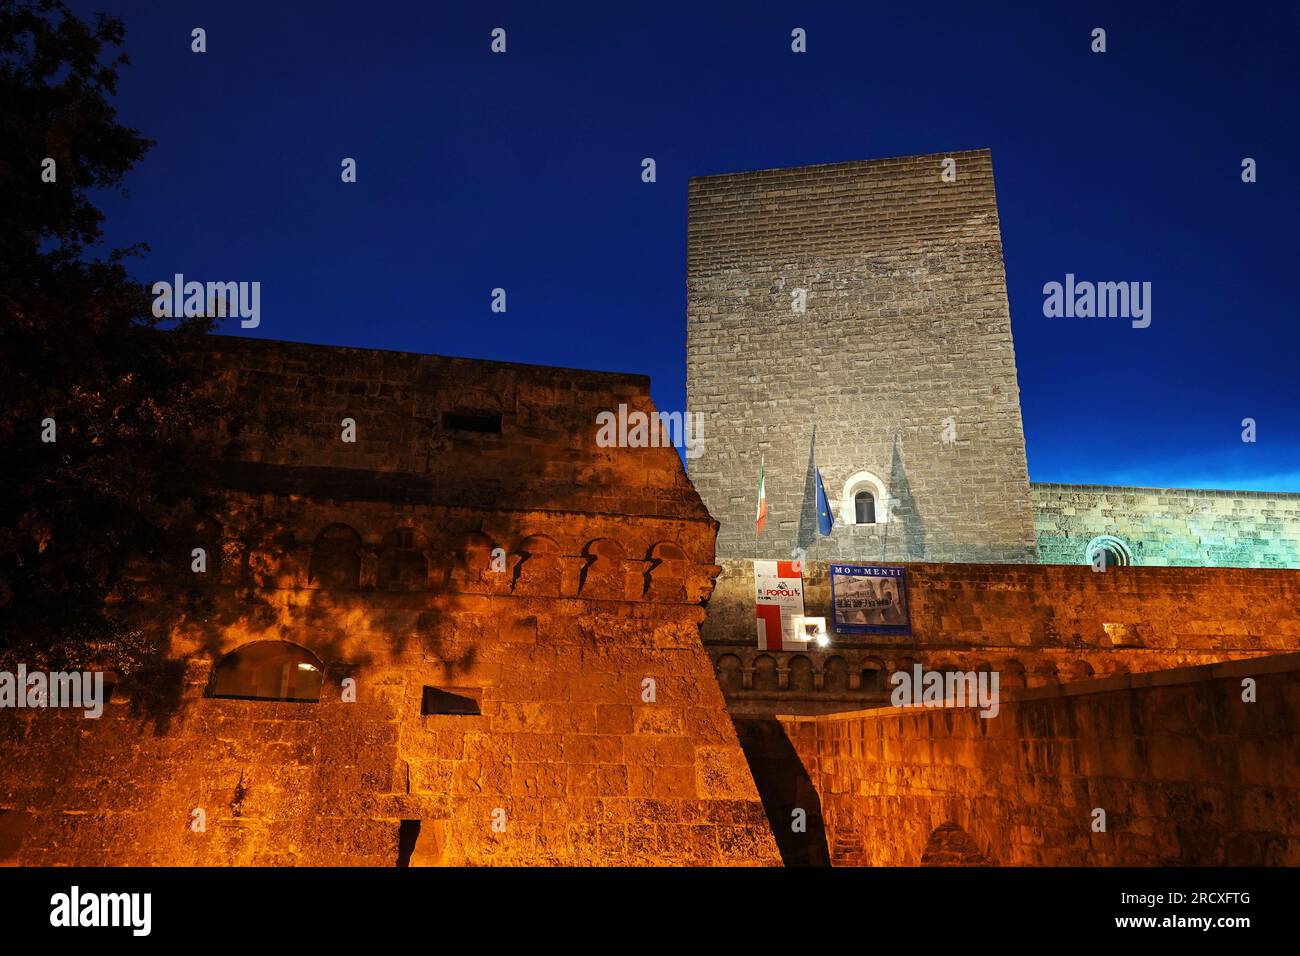 Castello Svevo di Bari Stock Photo